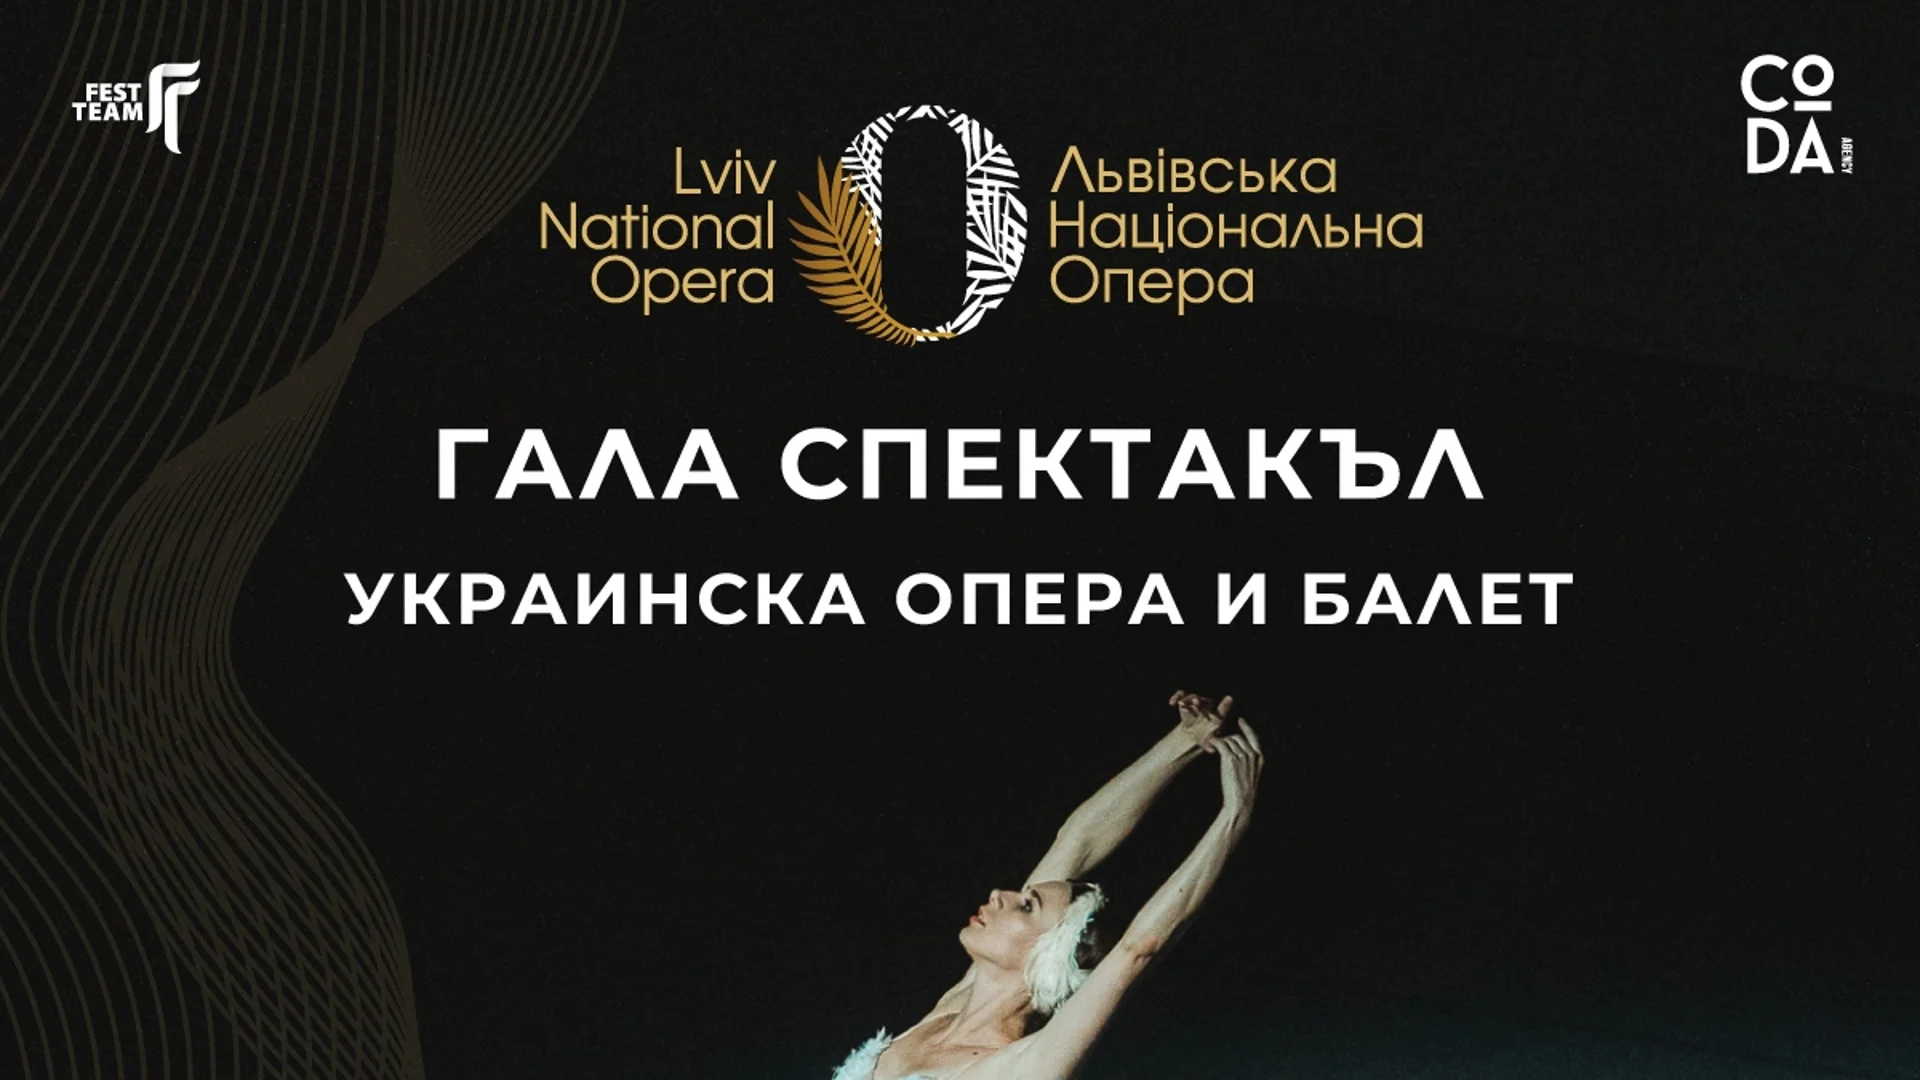 Националната опера и балет на Украйна с гала спектакъл в София на 15 май 2024 г.